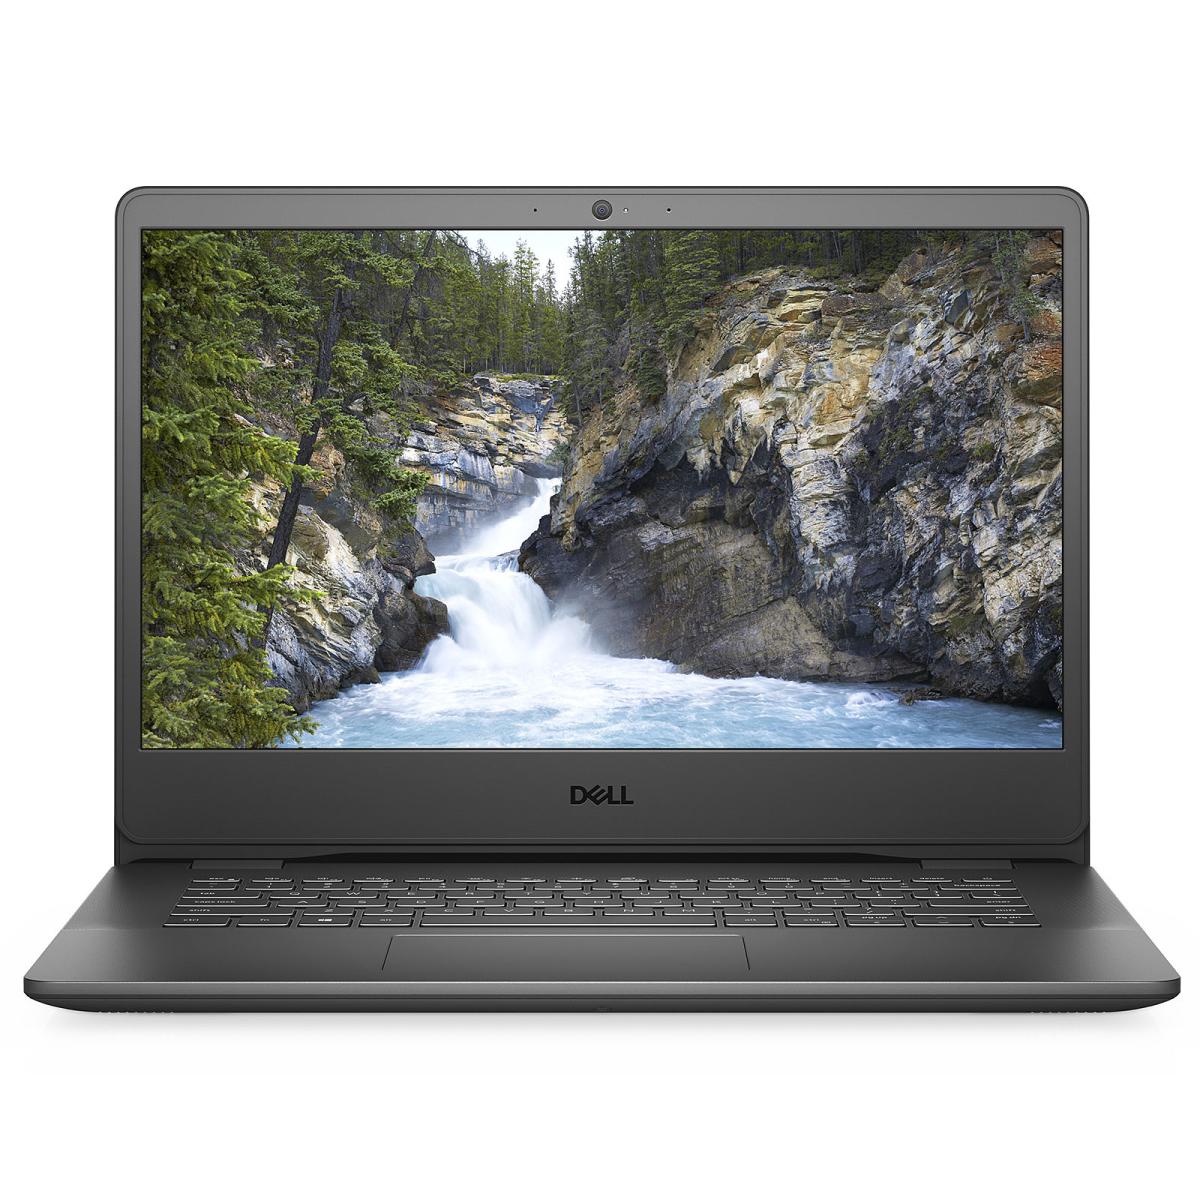 Dell Vostro 3400 11th Gen Intel i5-1135G7 14 inches FHD Anti Glare Display Laptop